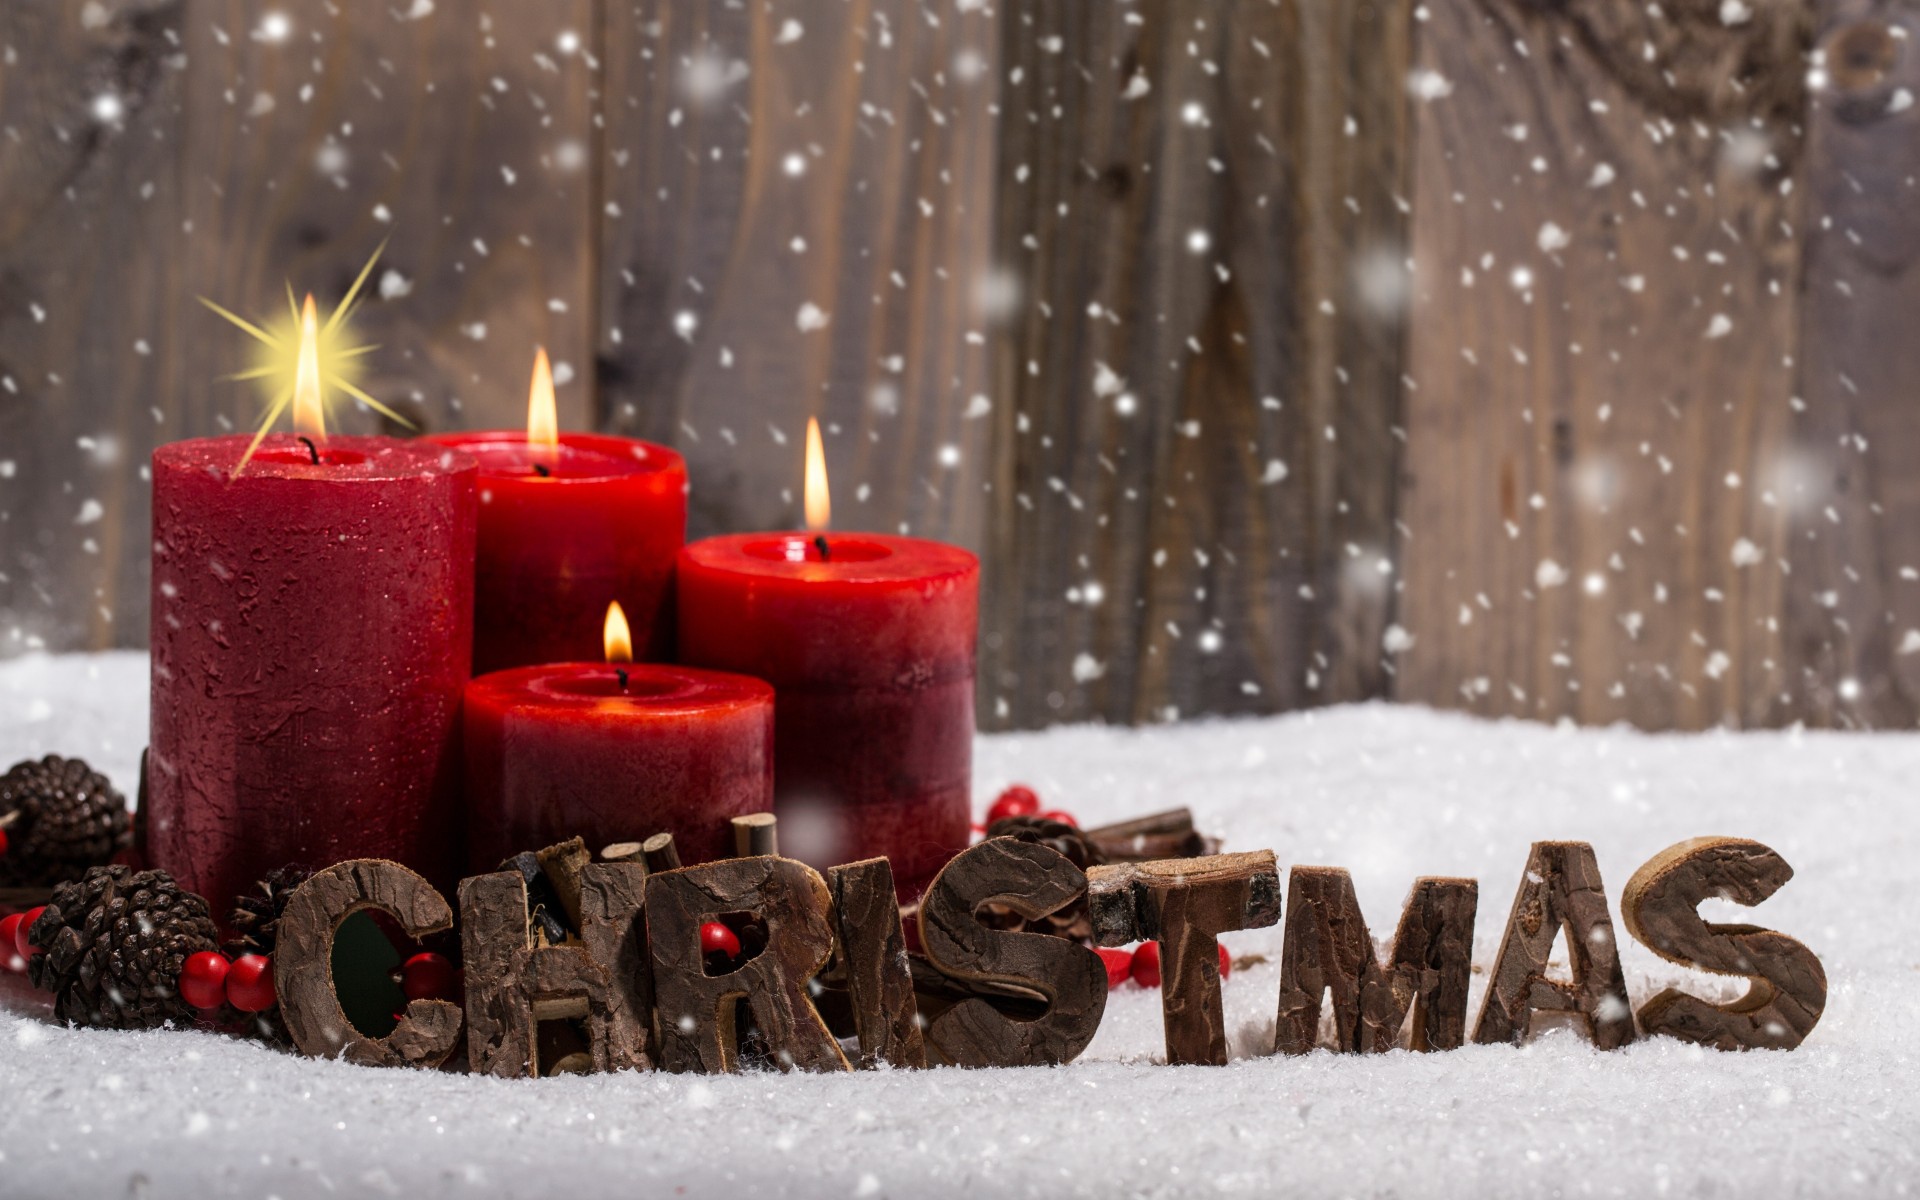 Hình Ảnh Mừng Giáng Sinh: Chào đón mùa lễ hội tuyệt vời nhất trong năm, hãy cùng gửi đến những người thân yêu những lời chúc tốt đẹp và ngập tràn yêu thương. Bản thân cũng đón nhận những thông điệp từ những người xung quanh. Hãy xem những hình ảnh về mùa Giáng Sinh để mang lại sự ấm lòng cho mỗi người.